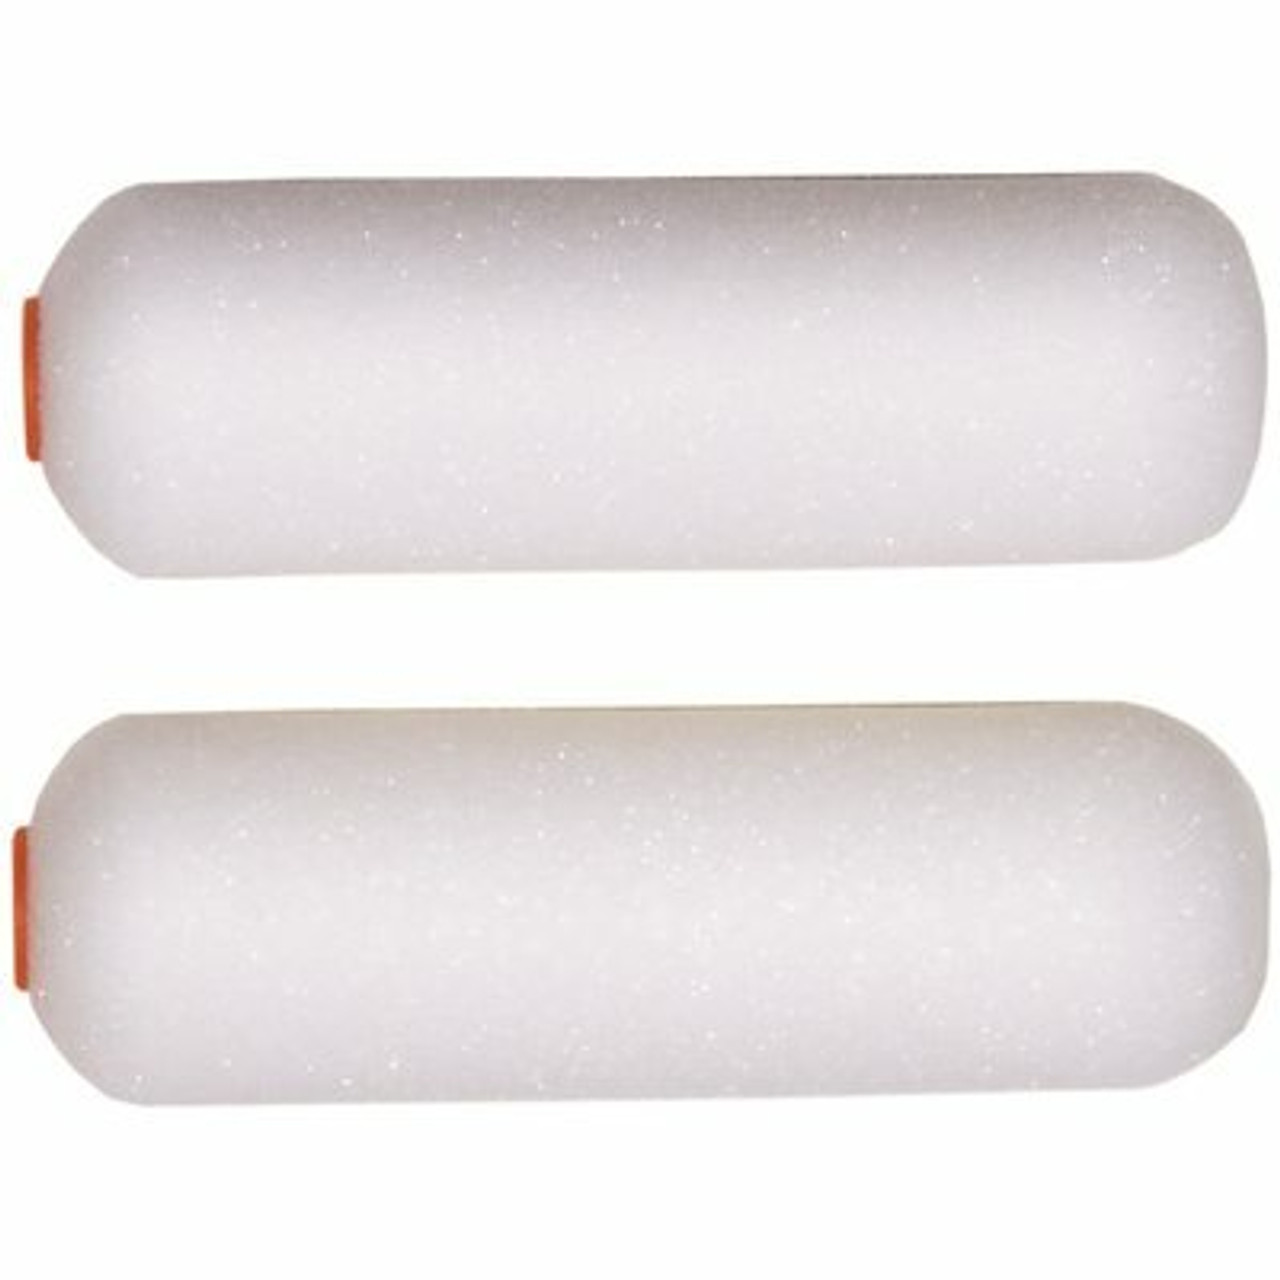 4 In. X 3/8 In. High-Density Foam Mini Paint Roller (2-Pack)